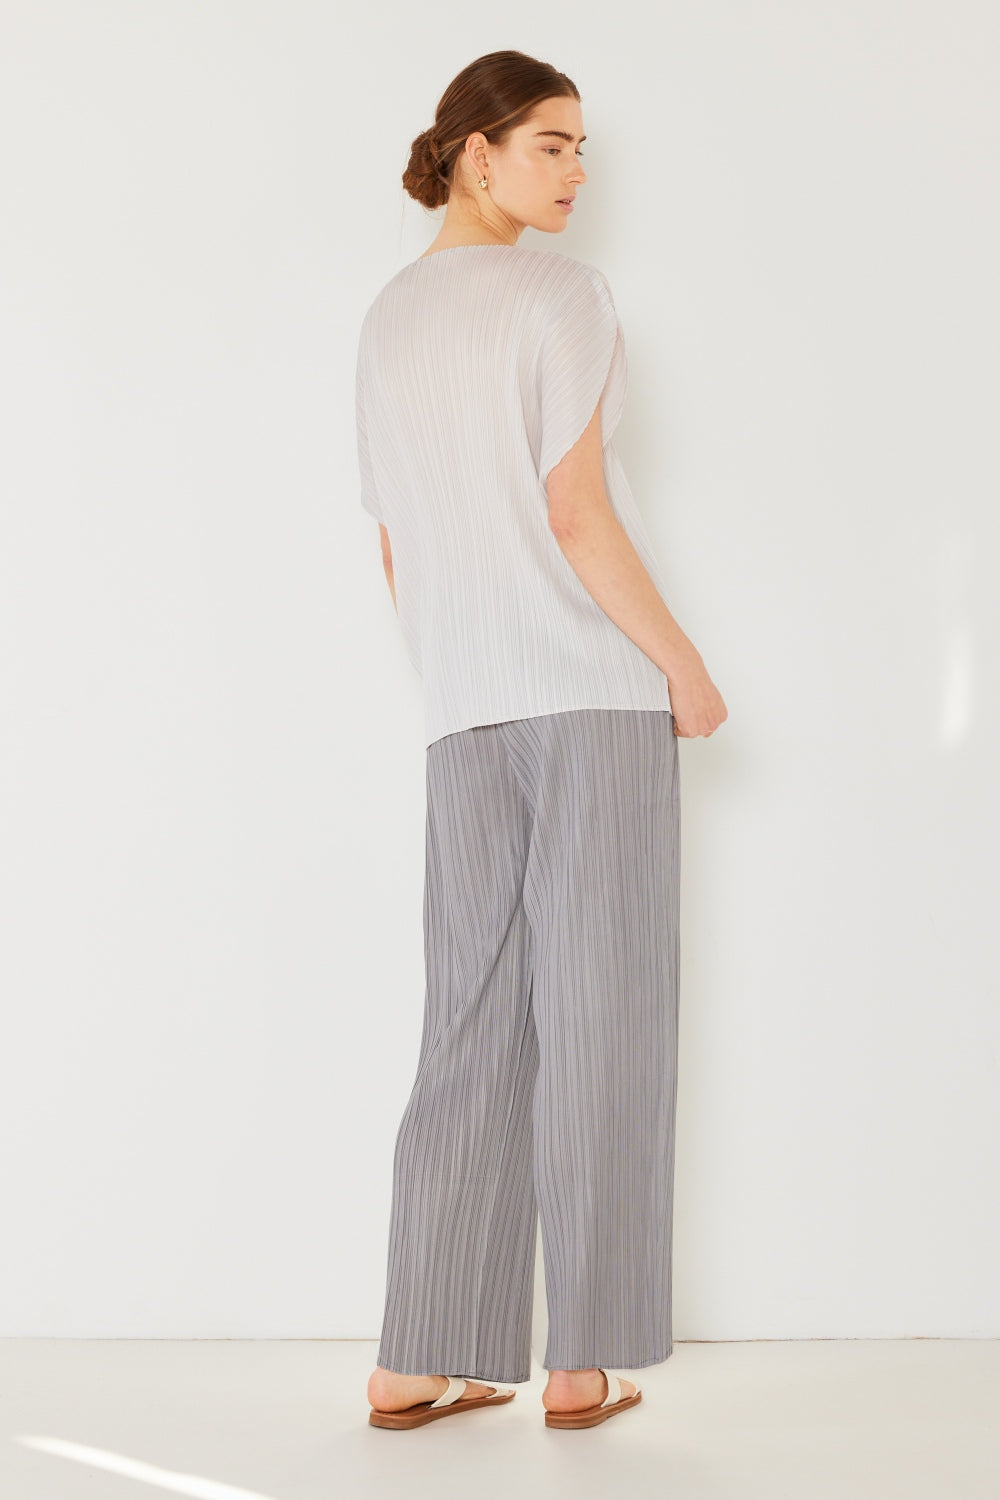 Marina West Pleated Elastic-Waist Straight Pants